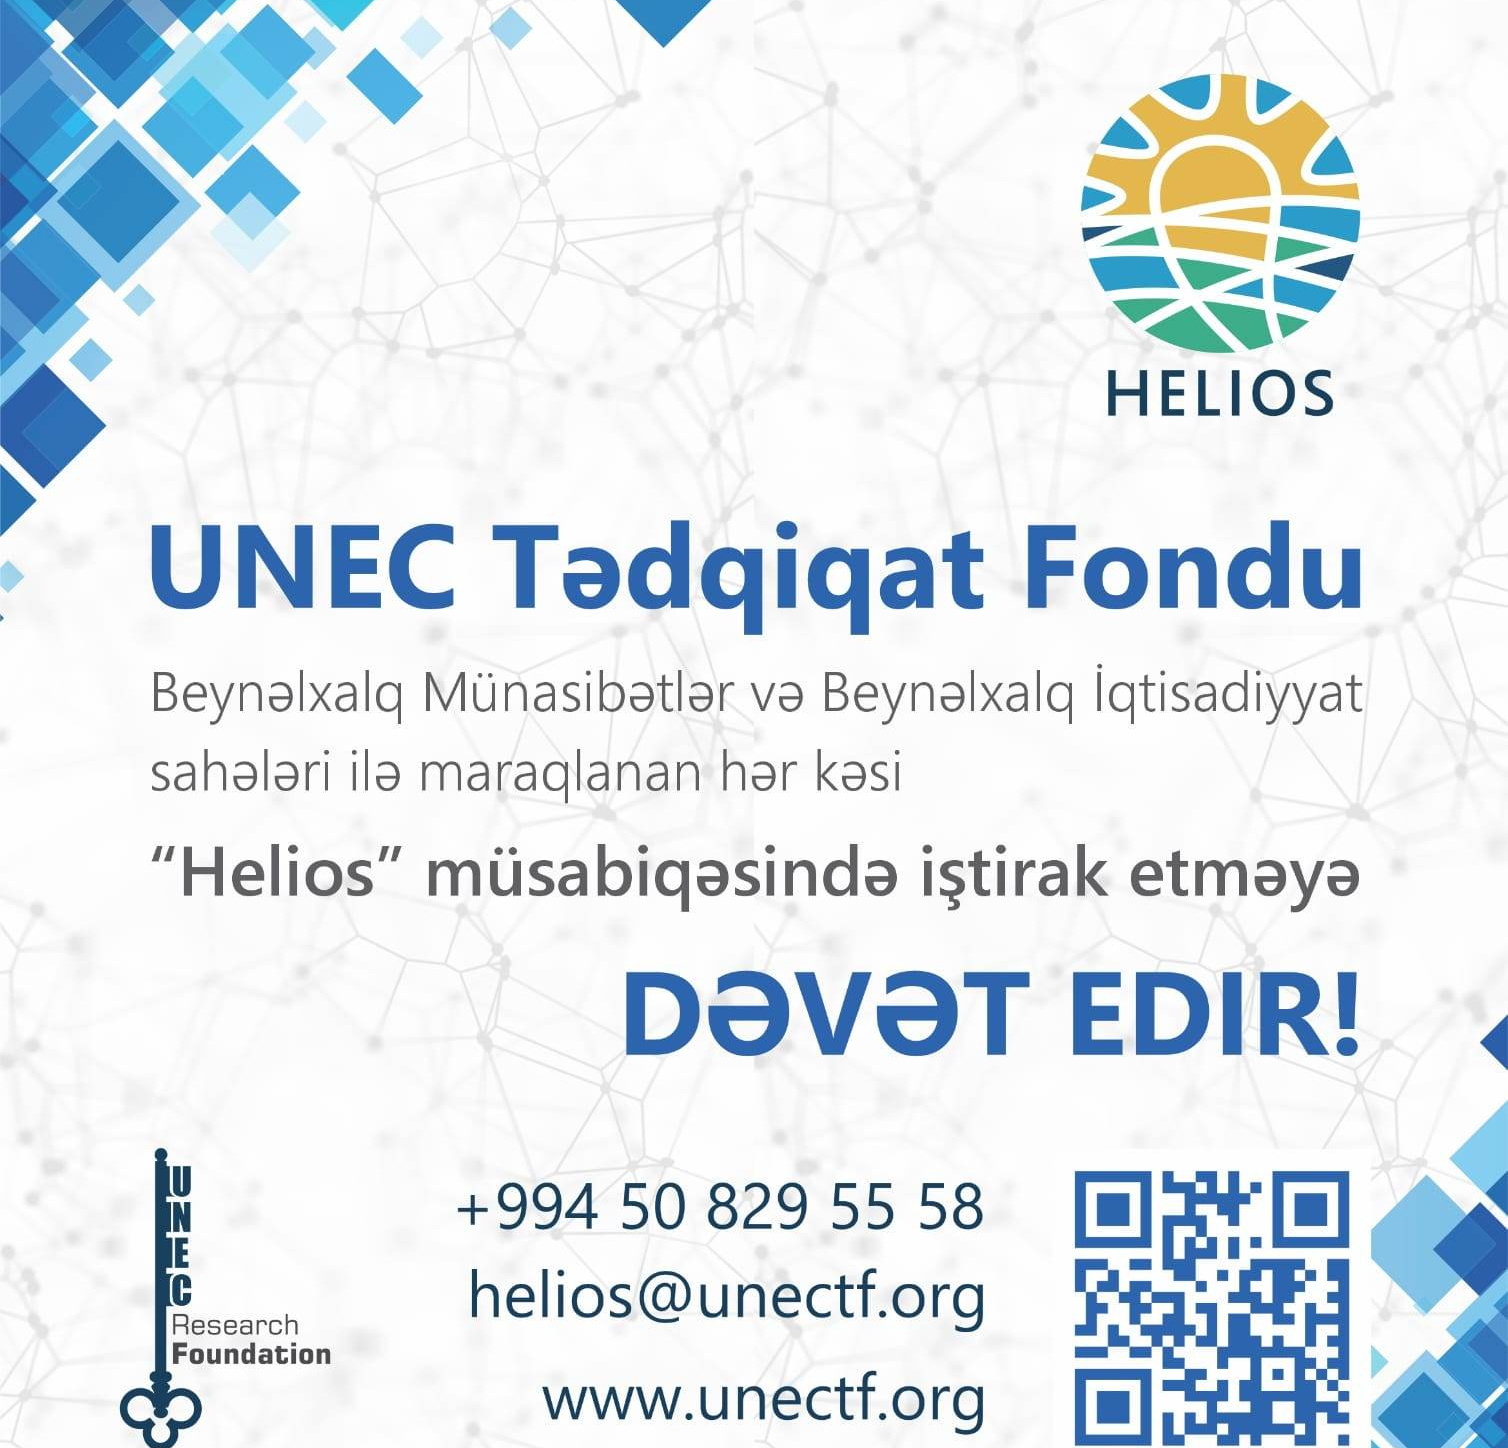    UNEC Tədqiqat Fondundan “Helios” müsabiqəsi!   